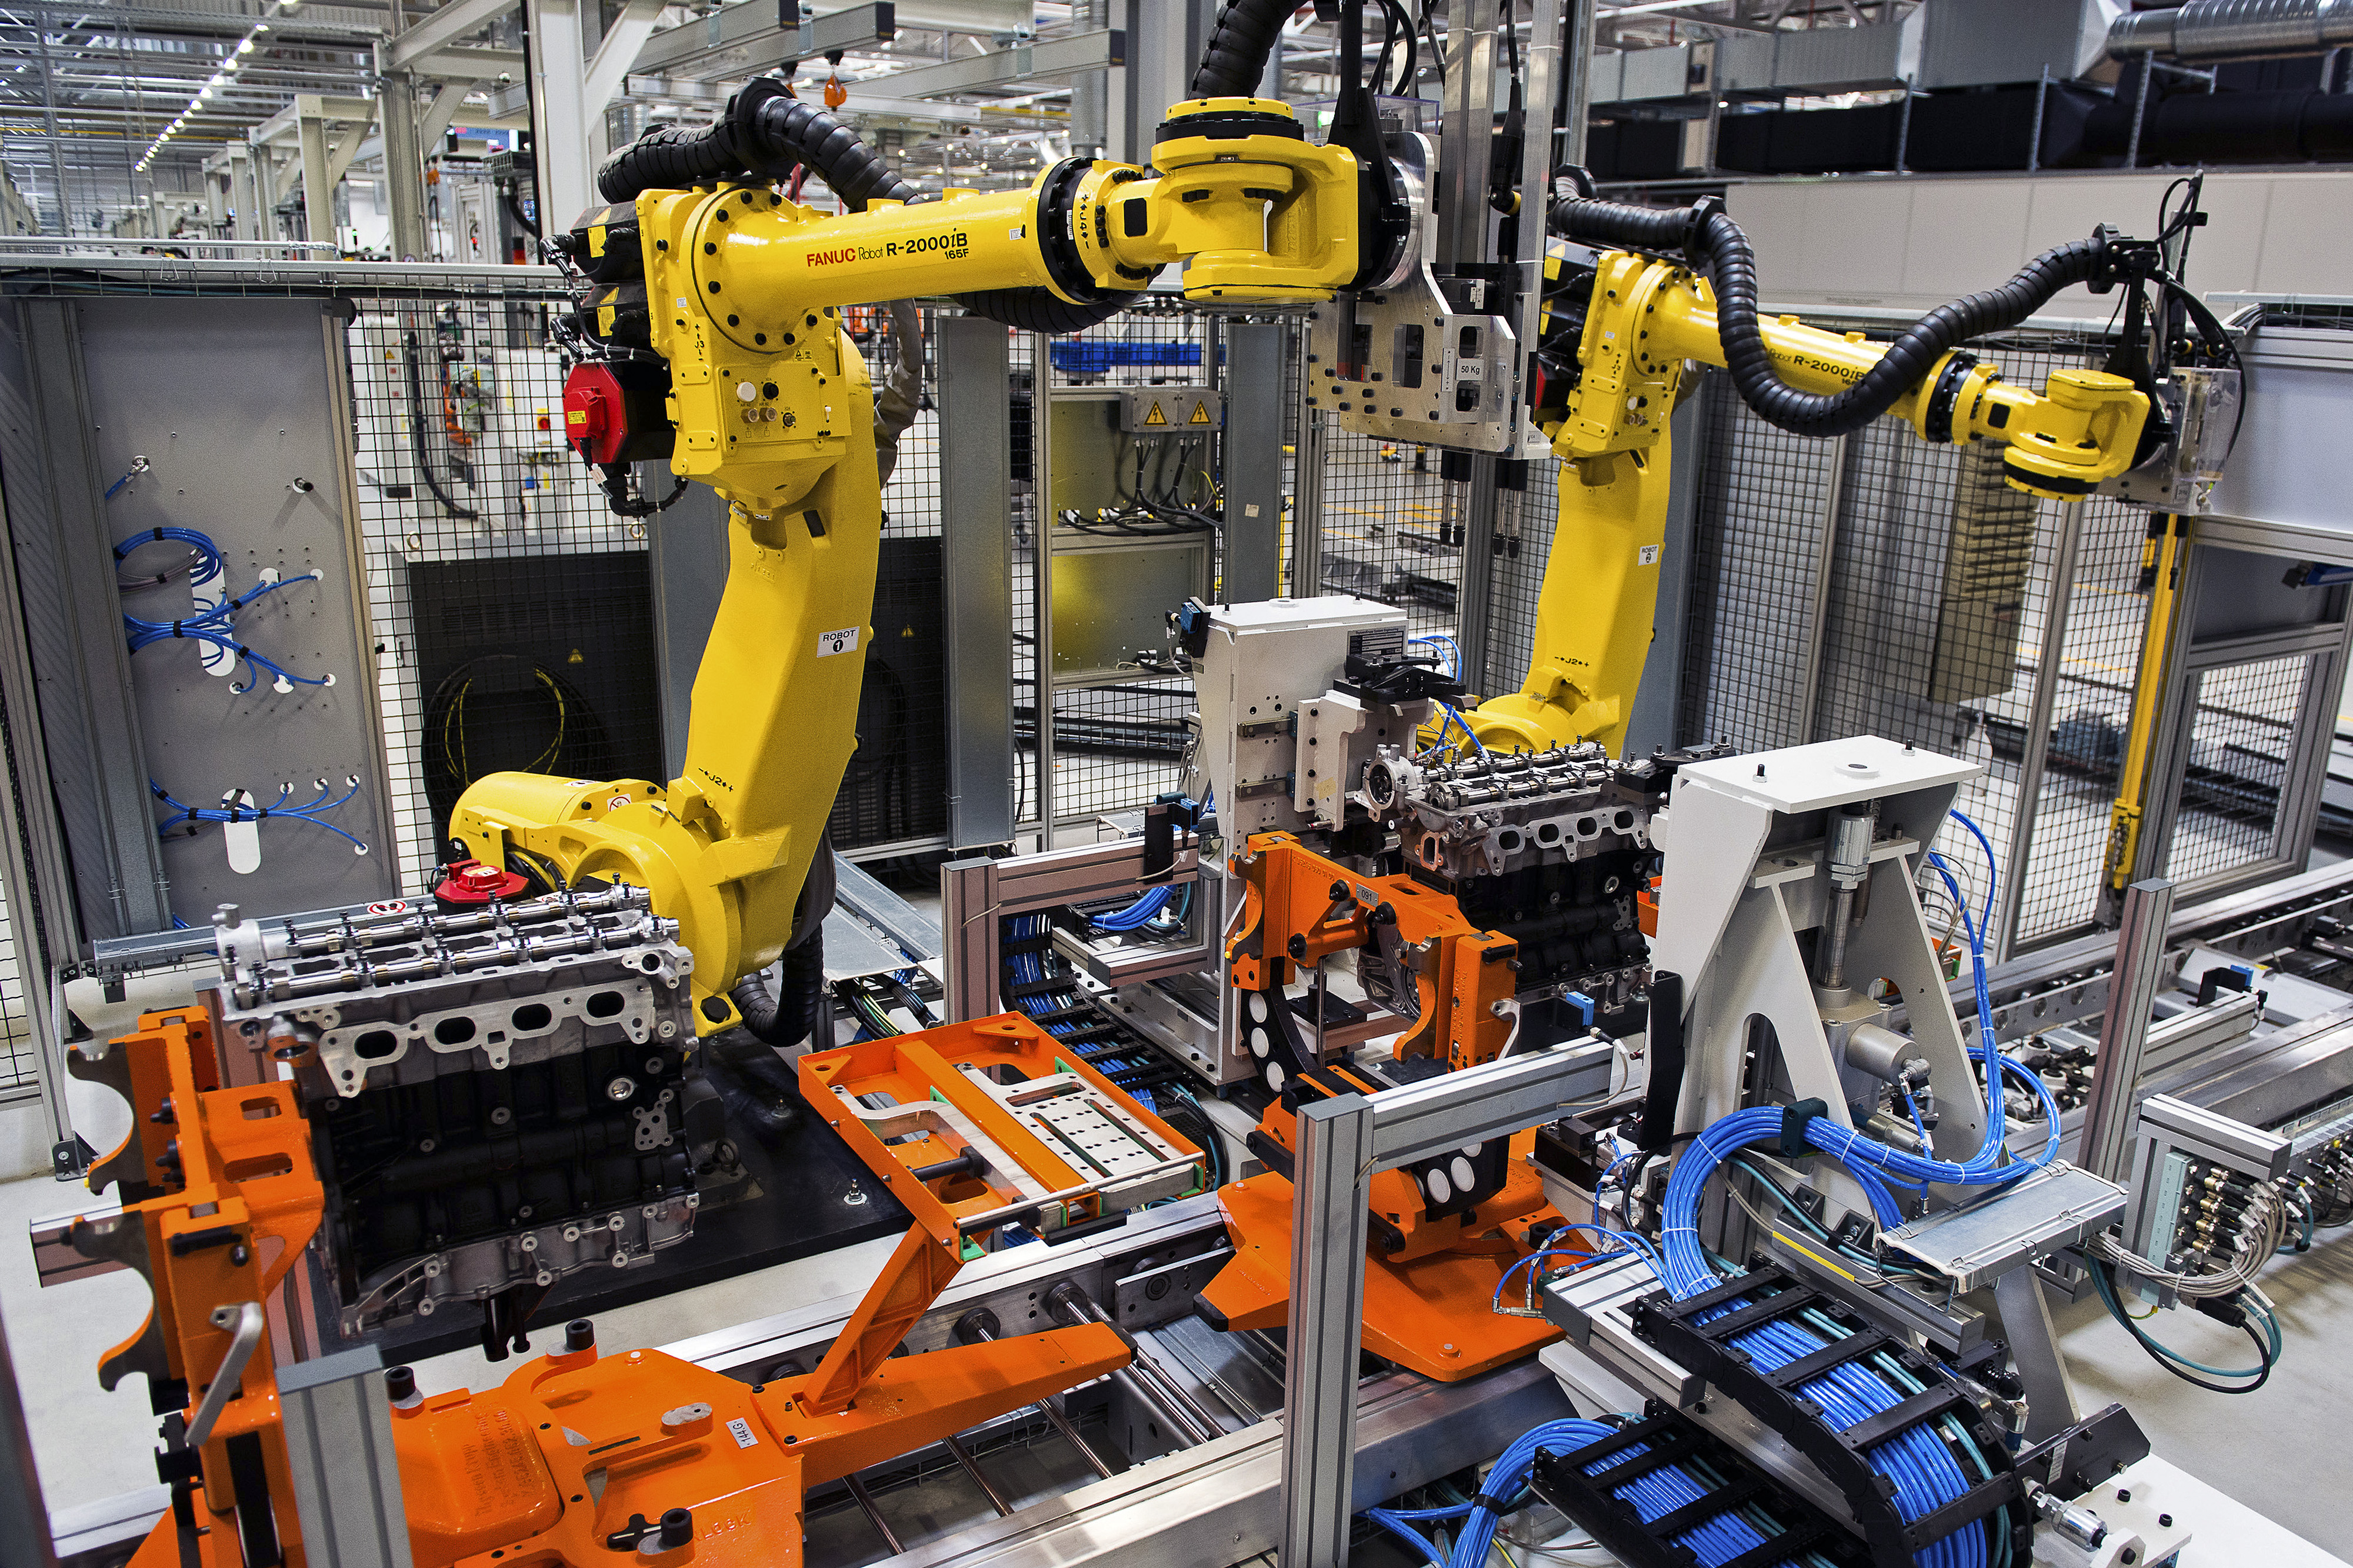 Сборка промышленных машин. Роботы фирмы Fanuc. Роботизированный Технологический комплекс РТК. Fanuc производители роботов. Автоматизация производства.